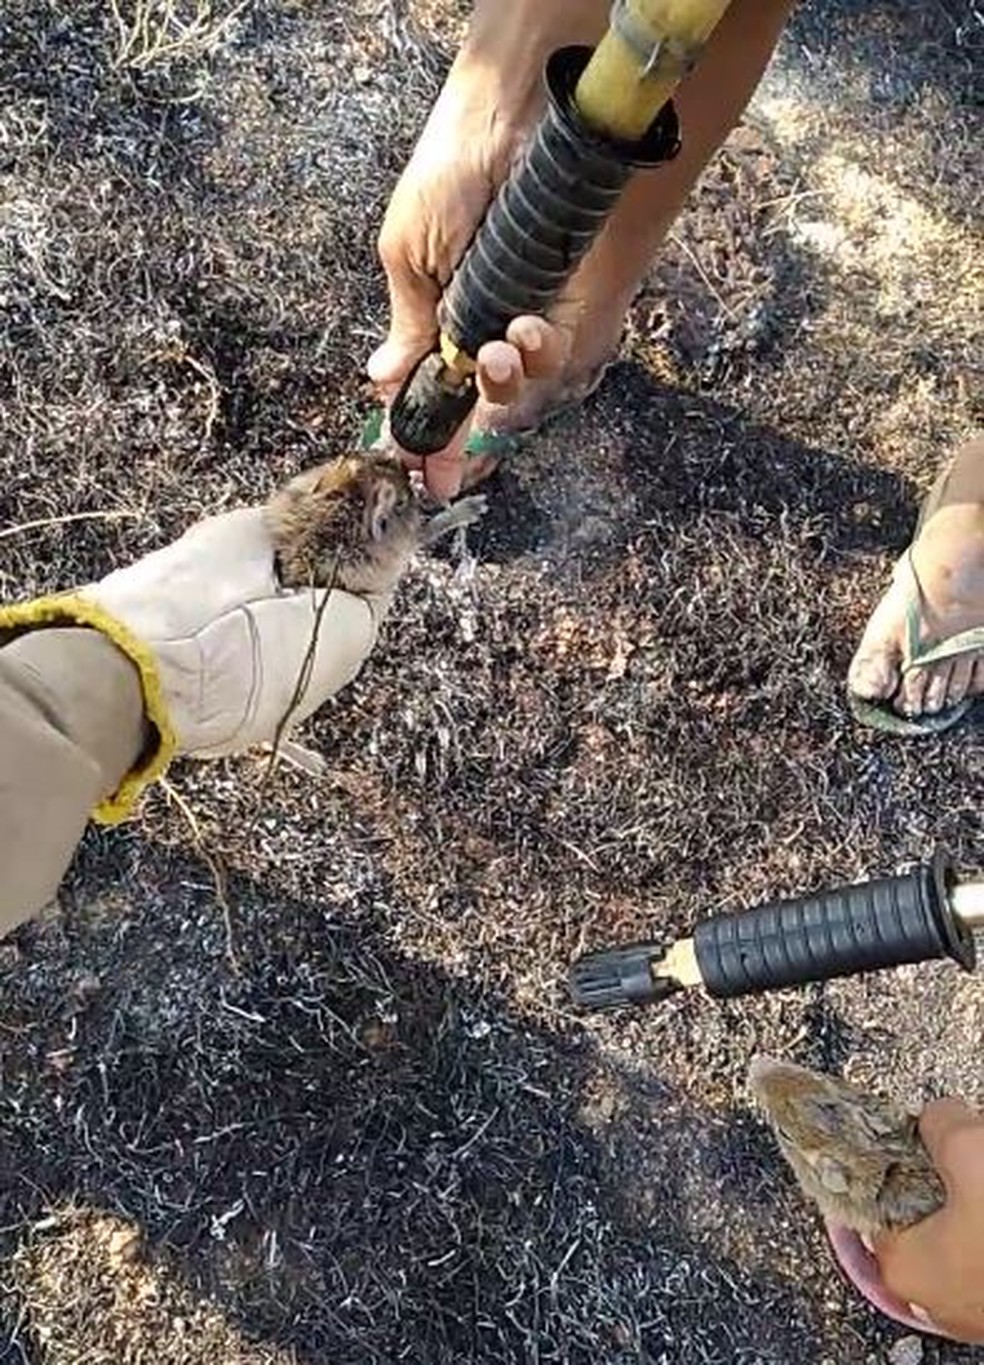 Preás receberam água após serem encontrados com partes do corpo queimadas em incêndio em vegetação no distrito de Pombo, em Caridade. — Foto: Reprodução